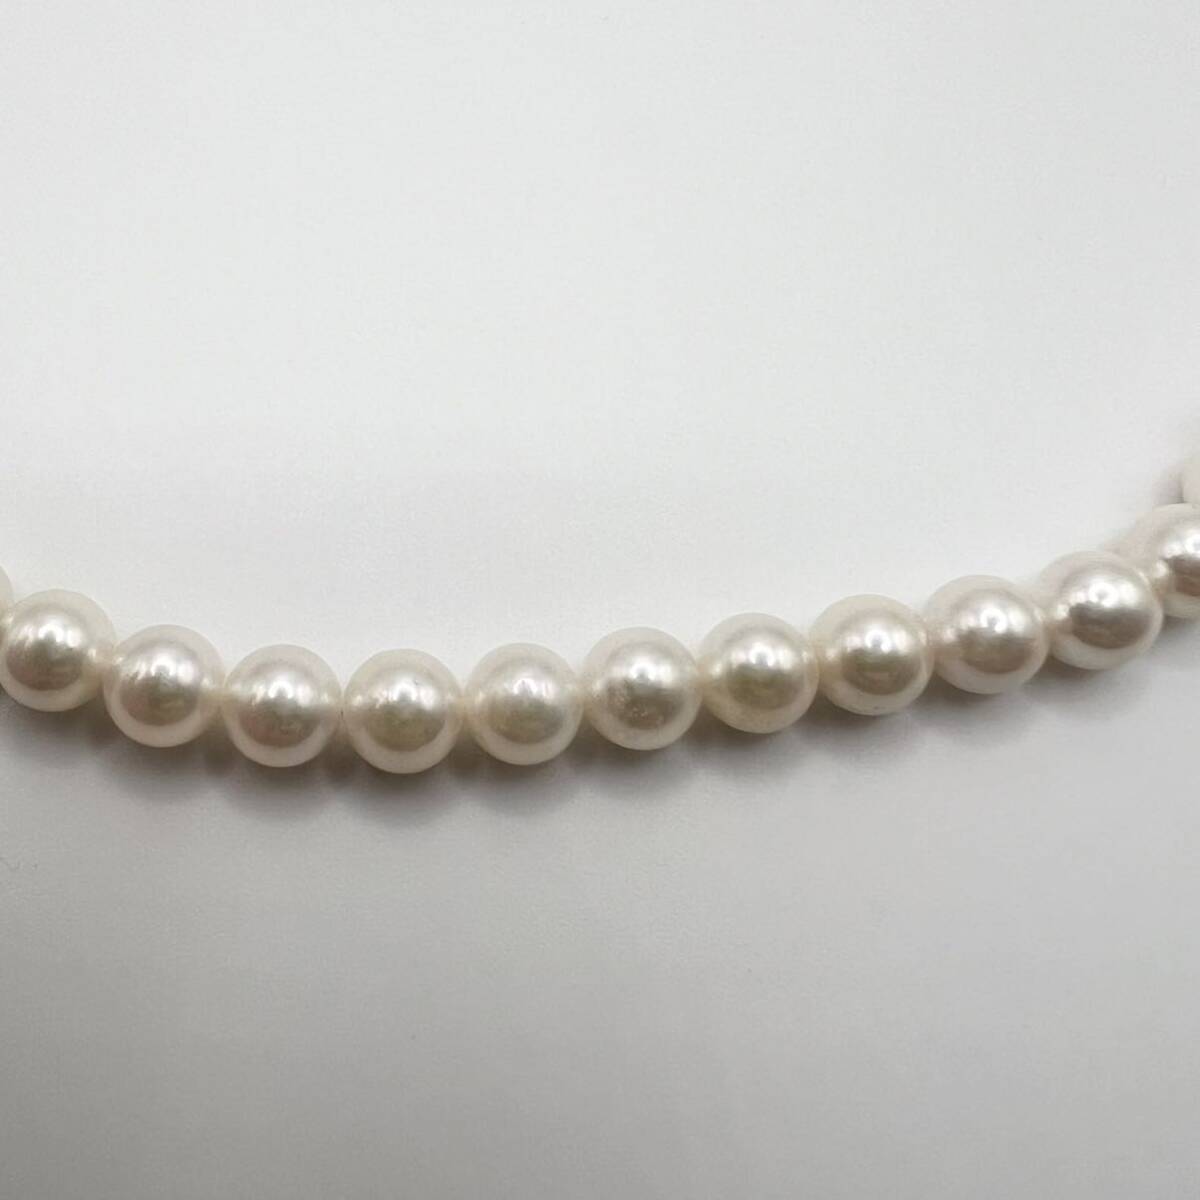 本真珠 akoya あこや真珠 7mm珠 パールネックレス フォーマル ネックレス silver 刻印 送料無料の画像6